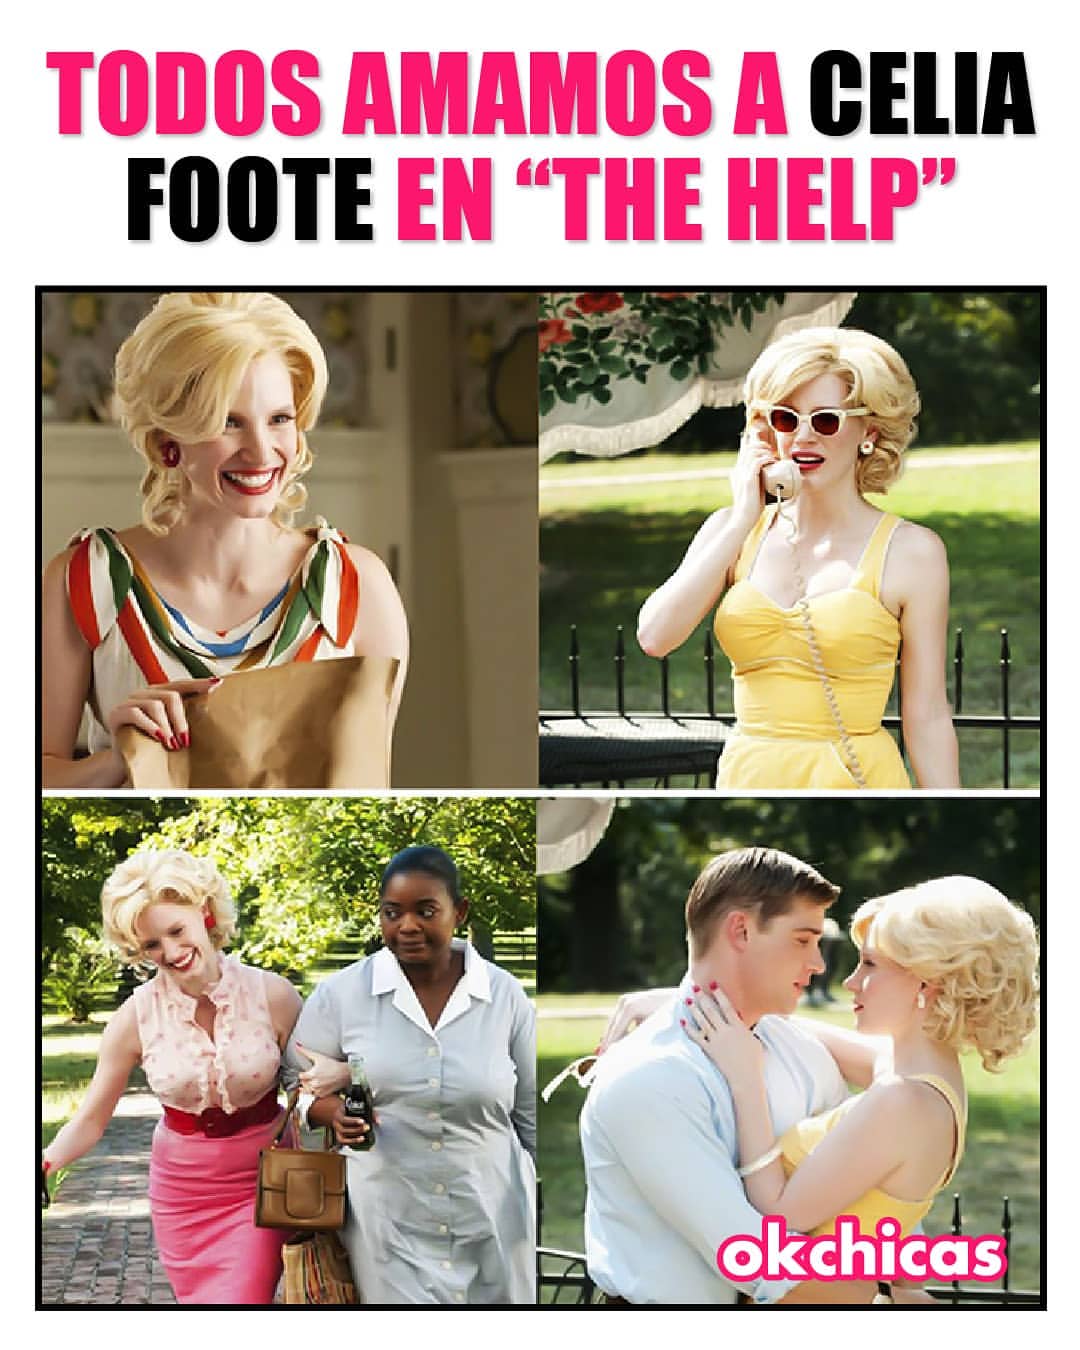 Todos amamos a Celia Foote en "the help".